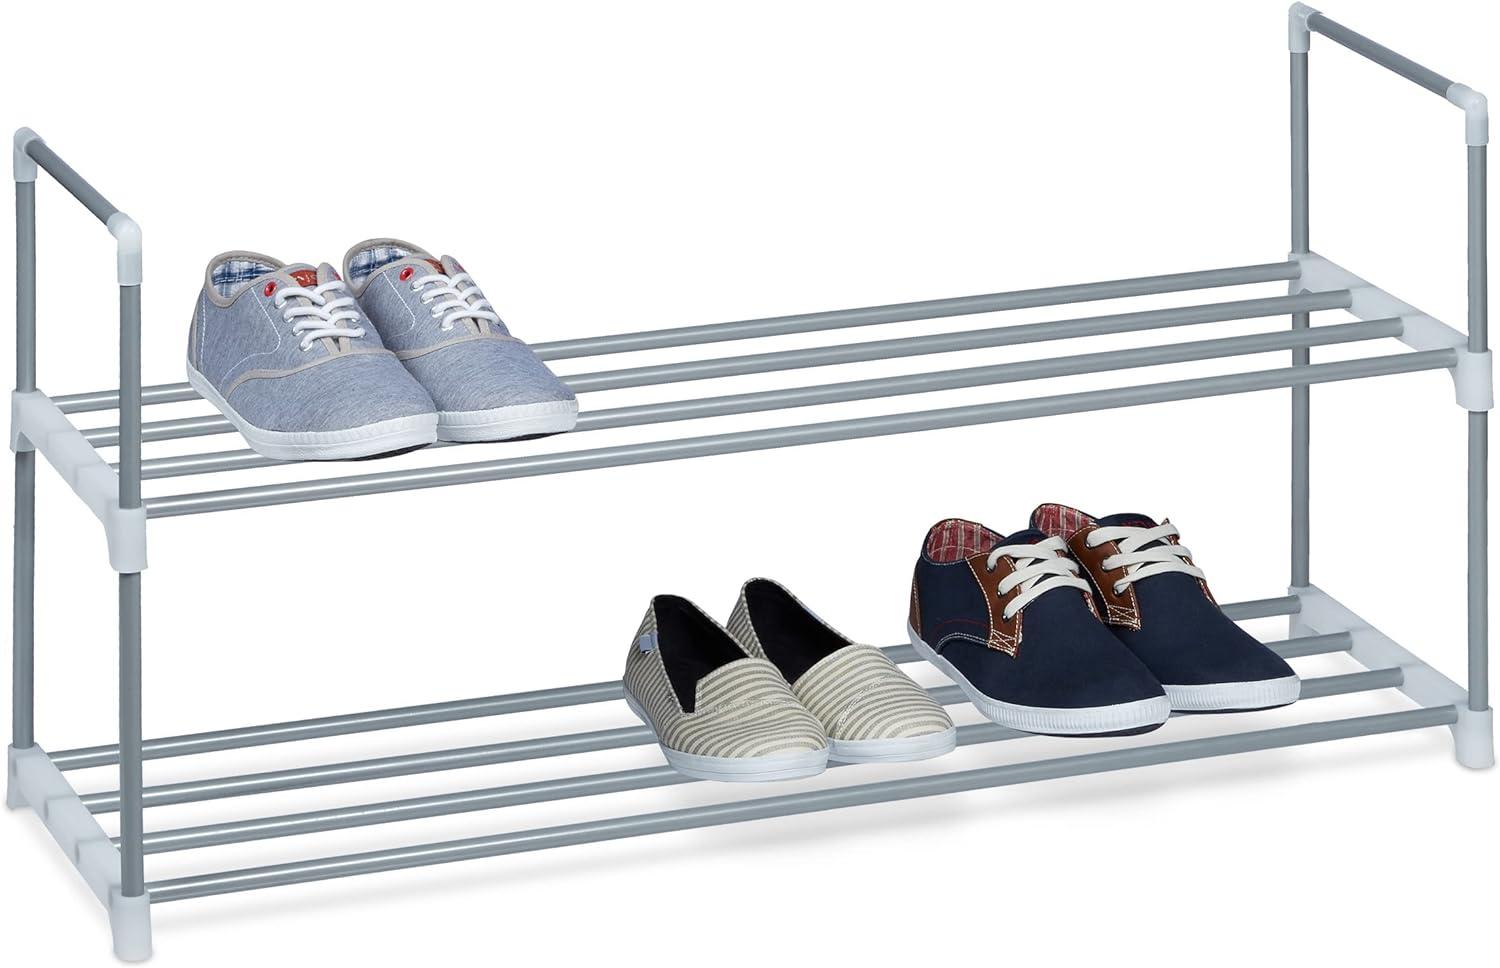 Relaxdays Schuhregal Stecksystem, 2 Ebenen, für 8 Paar Schuhe, HxBxT: 45 x 90 x 31 cm, Schuhständer Metall, silber/weiß Bild 1